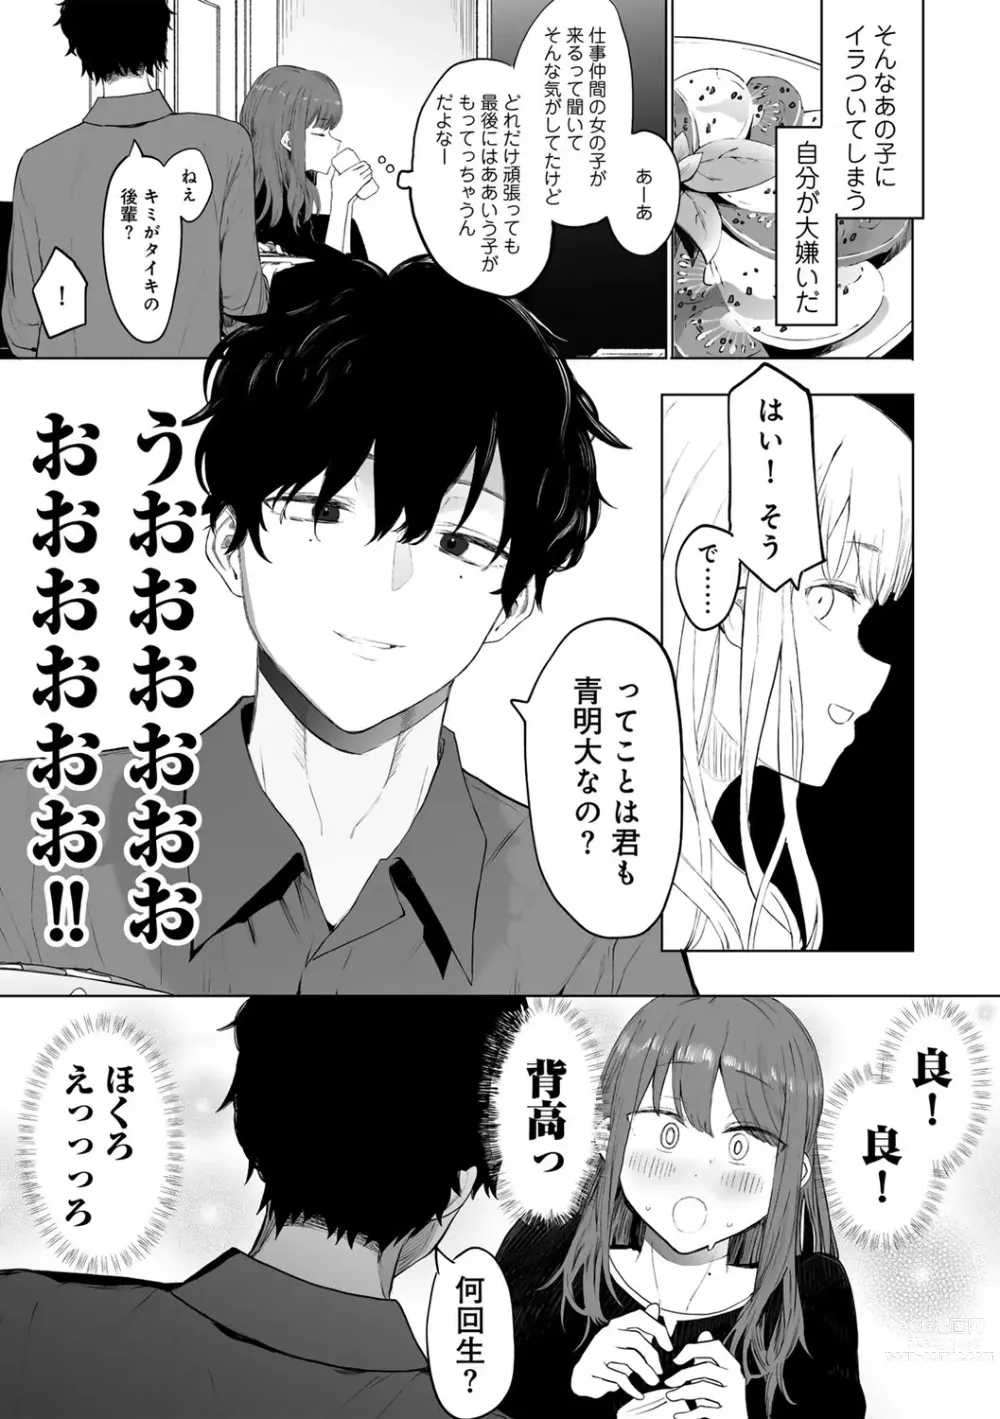 Page 7 of manga COMIC kisshug vol.3